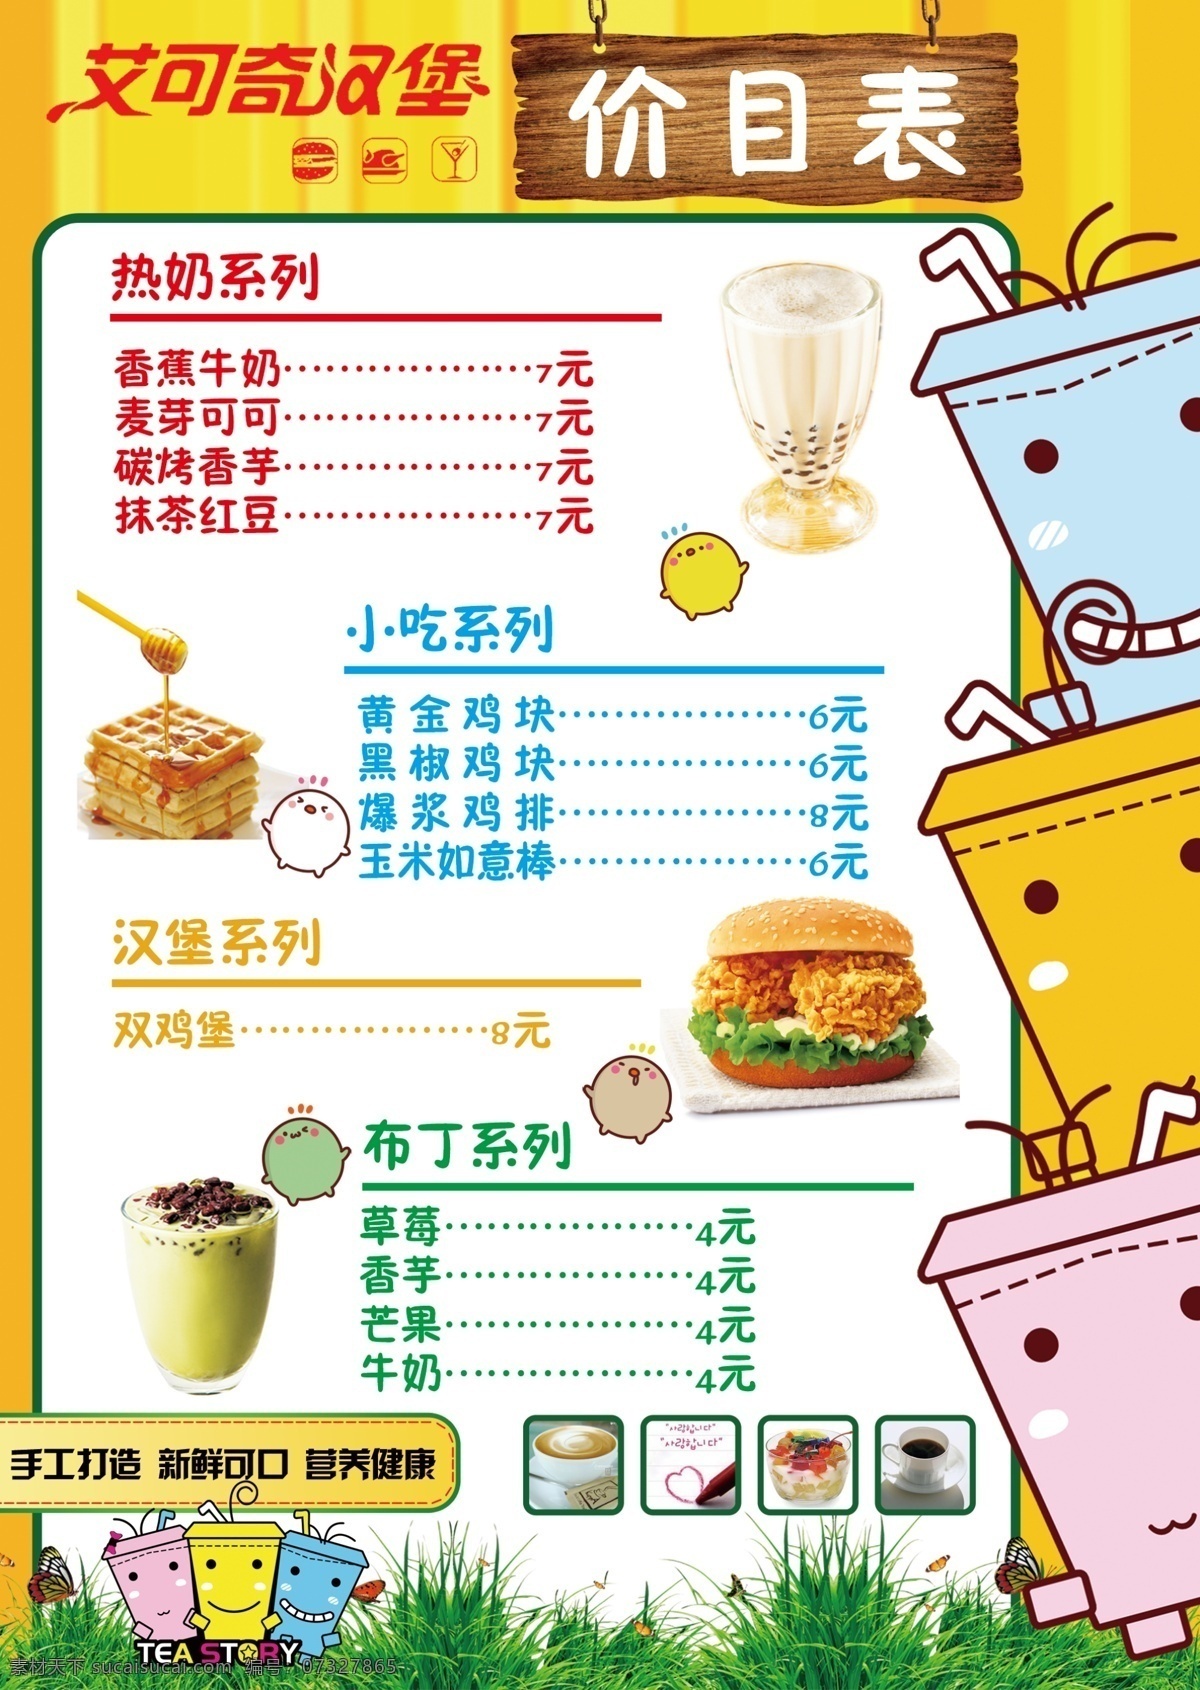 艾 奇 汉堡 价目表 艾可奇汉堡 奶茶 菜单 价格表 分层